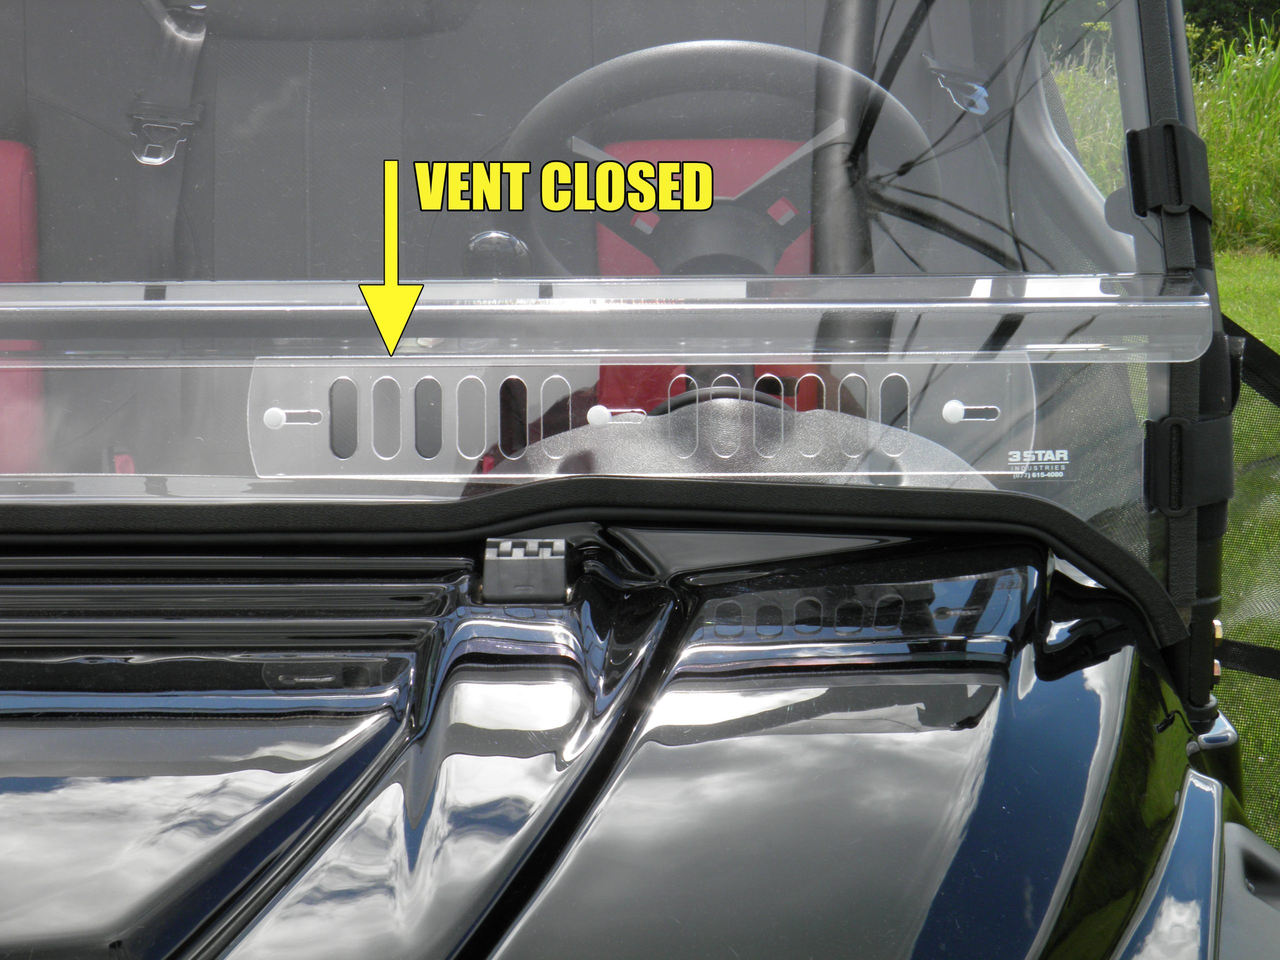 3 Star side x side John Deere HPX/XUV windshield vents closed